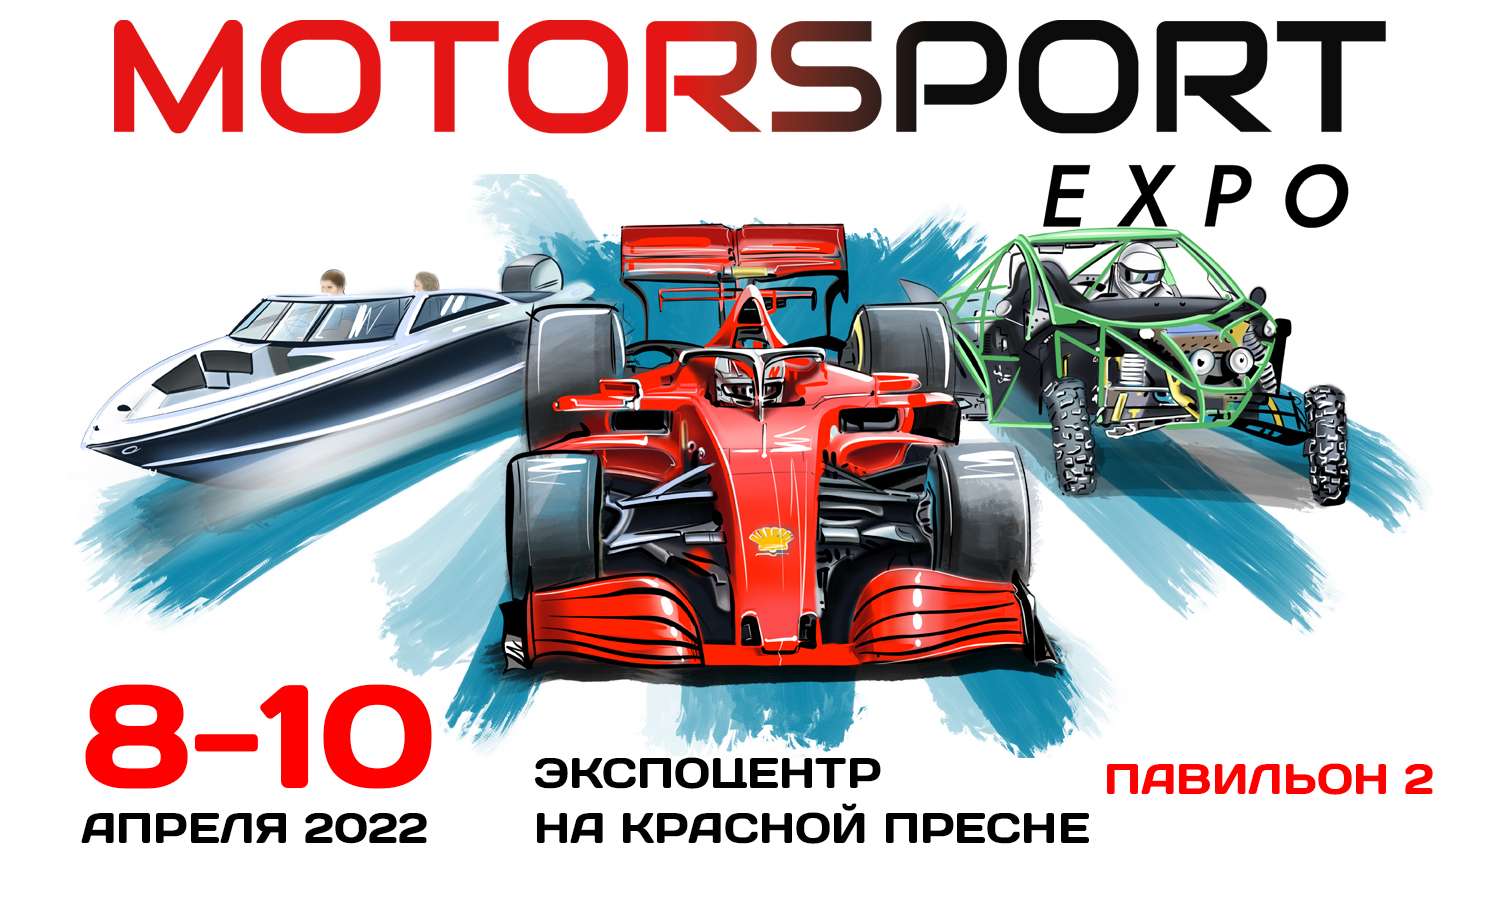  «Motorsport Expo 2022» - Главное событие гоночной индустрии